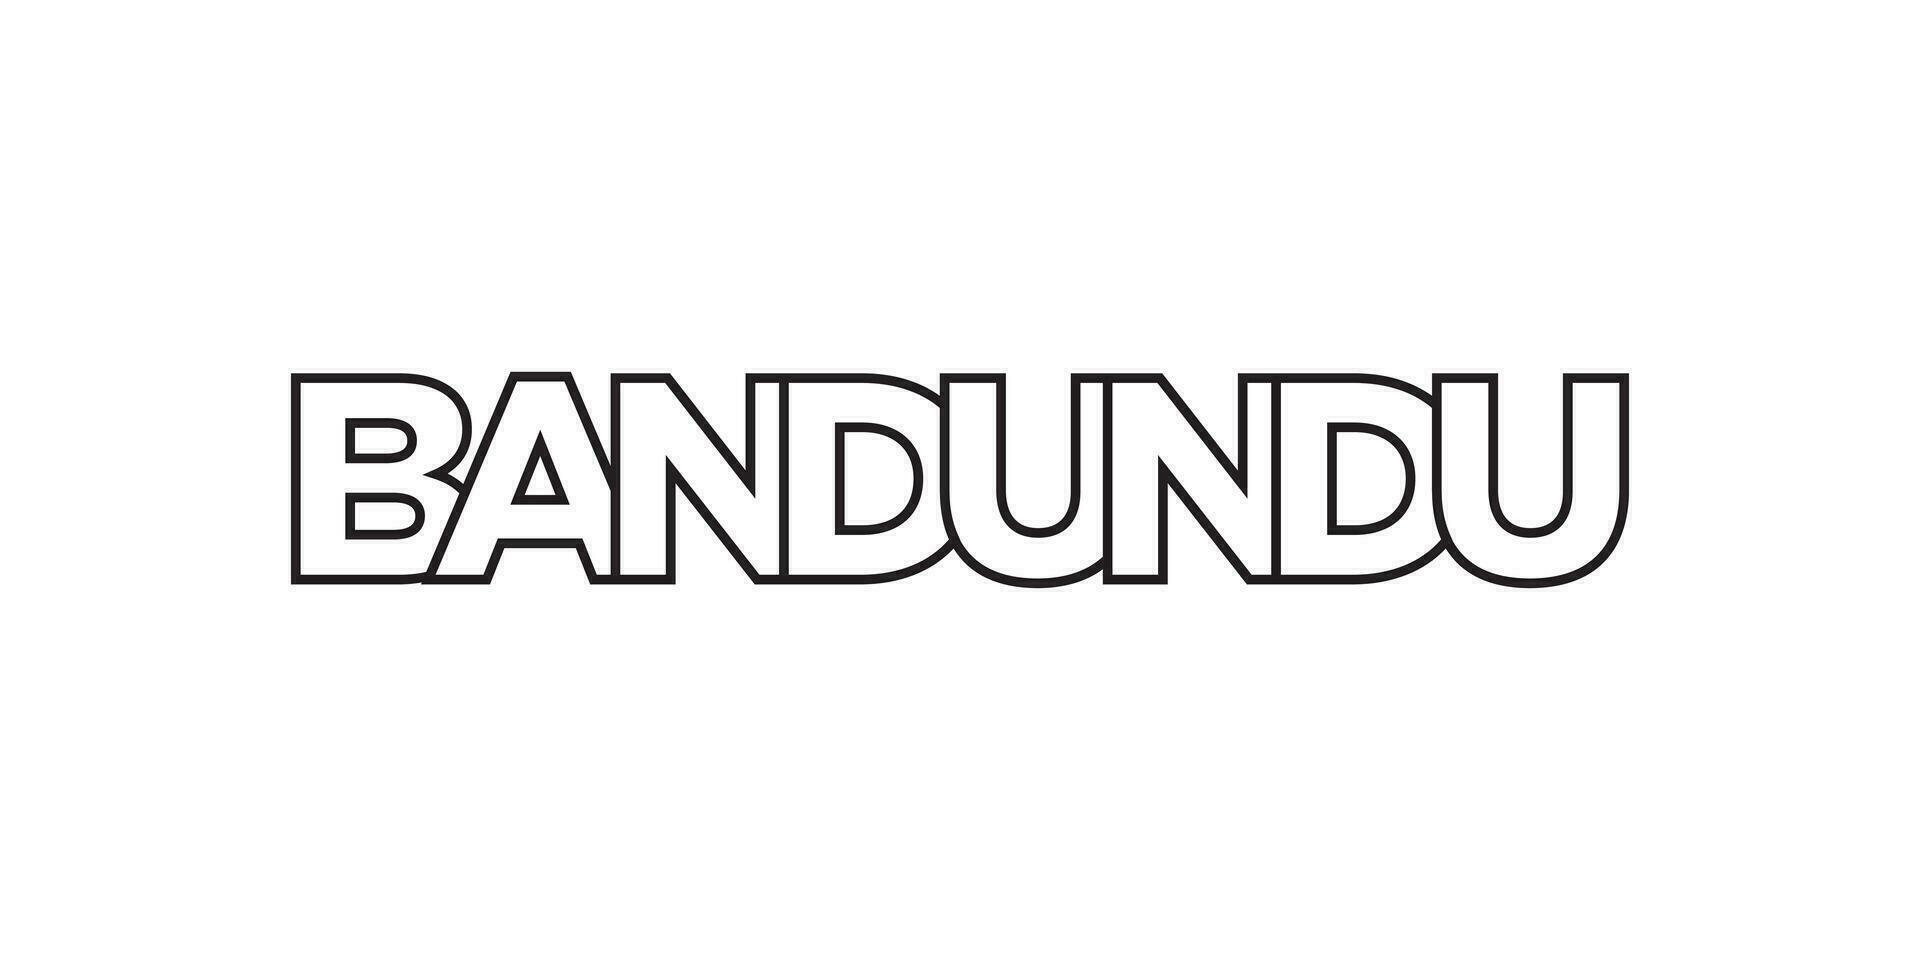 bandundu en el congo emblema. el diseño caracteristicas un geométrico estilo, vector ilustración con negrita tipografía en un moderno fuente. el gráfico eslogan letras.